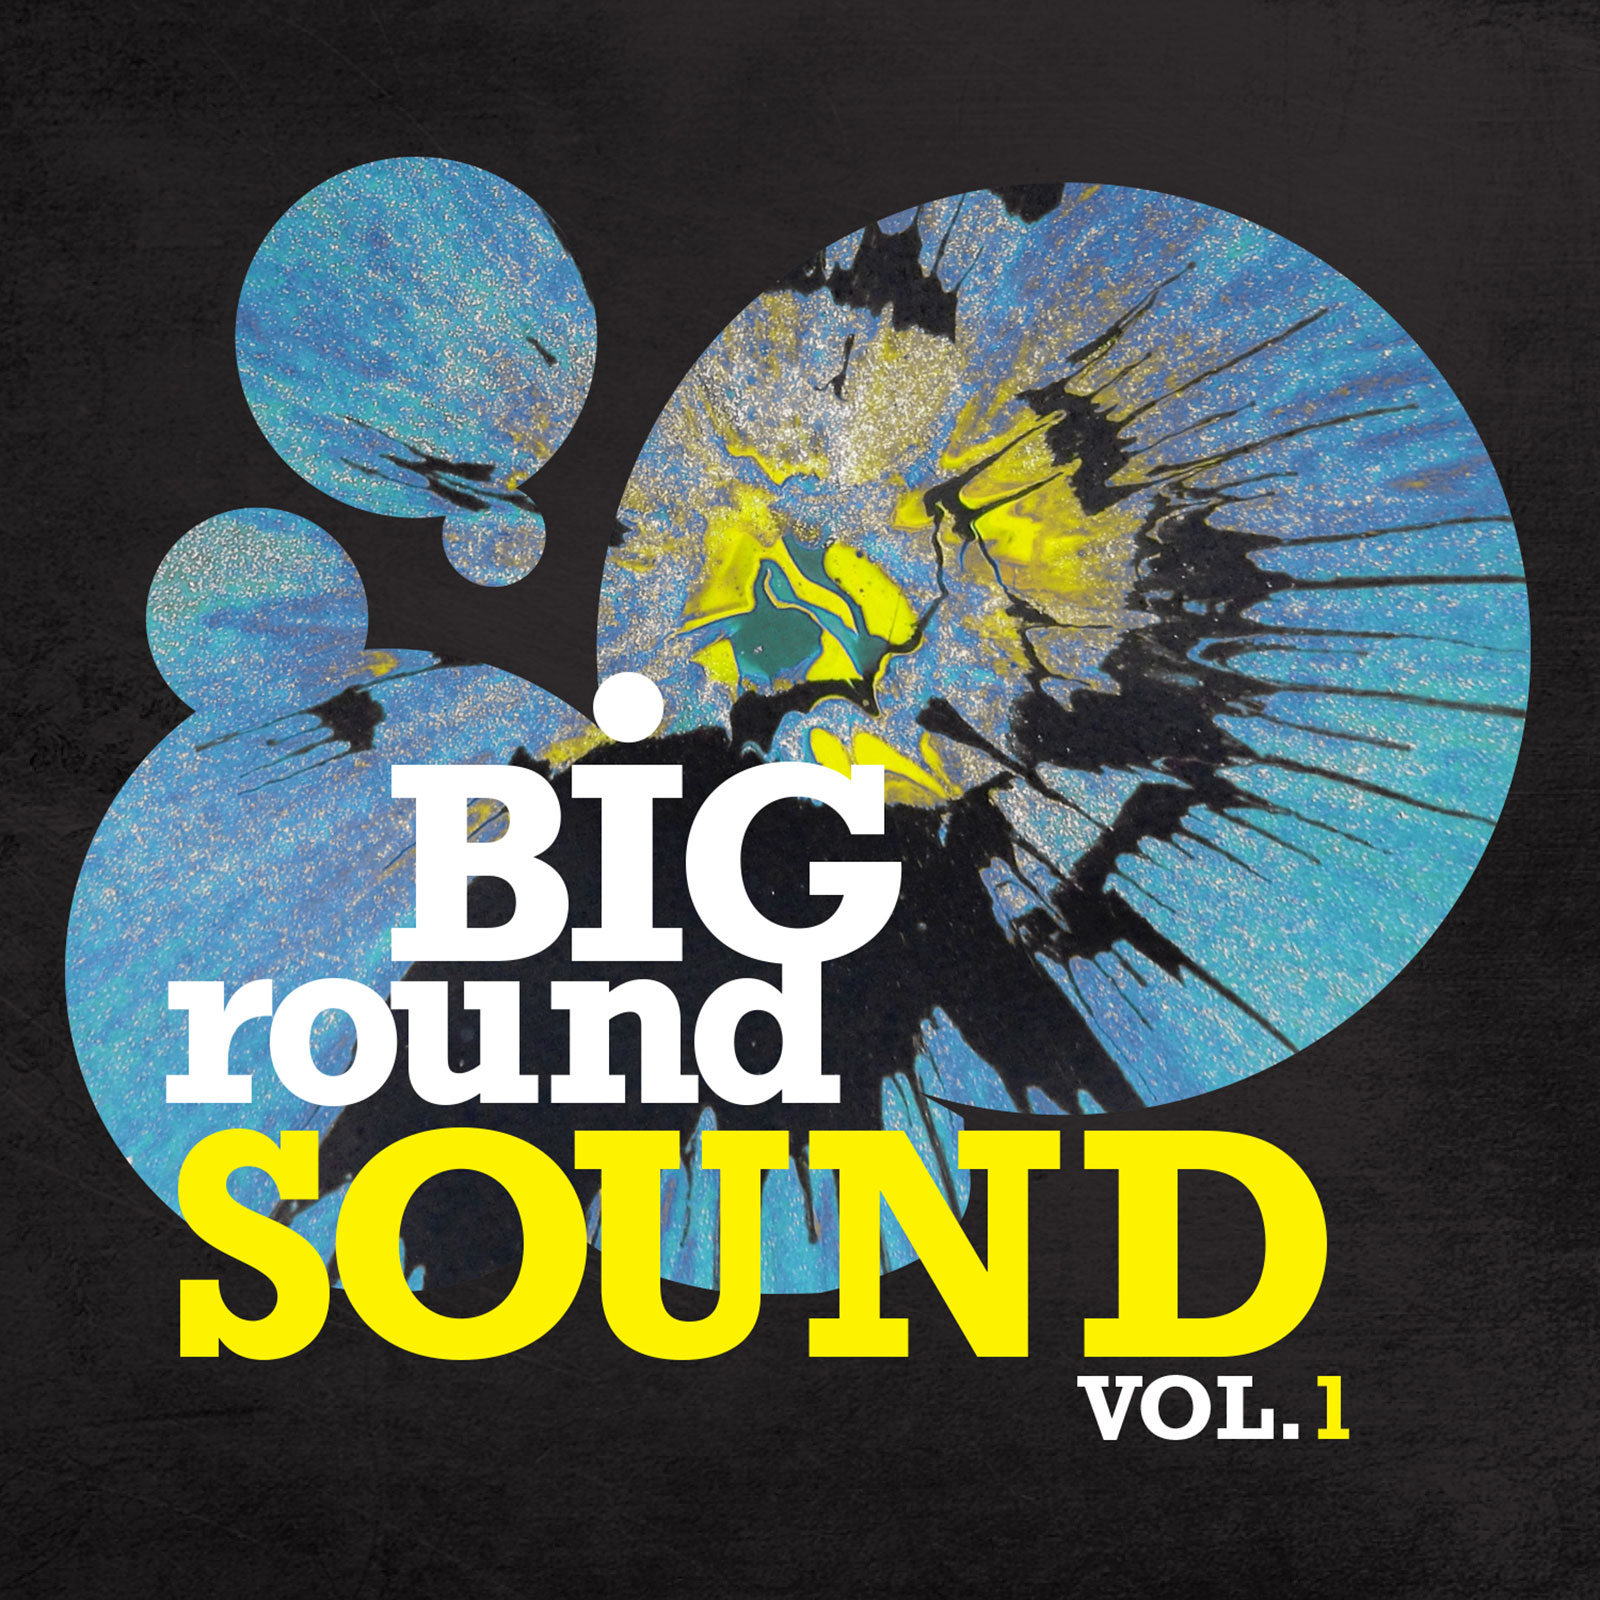 Big Round Sound